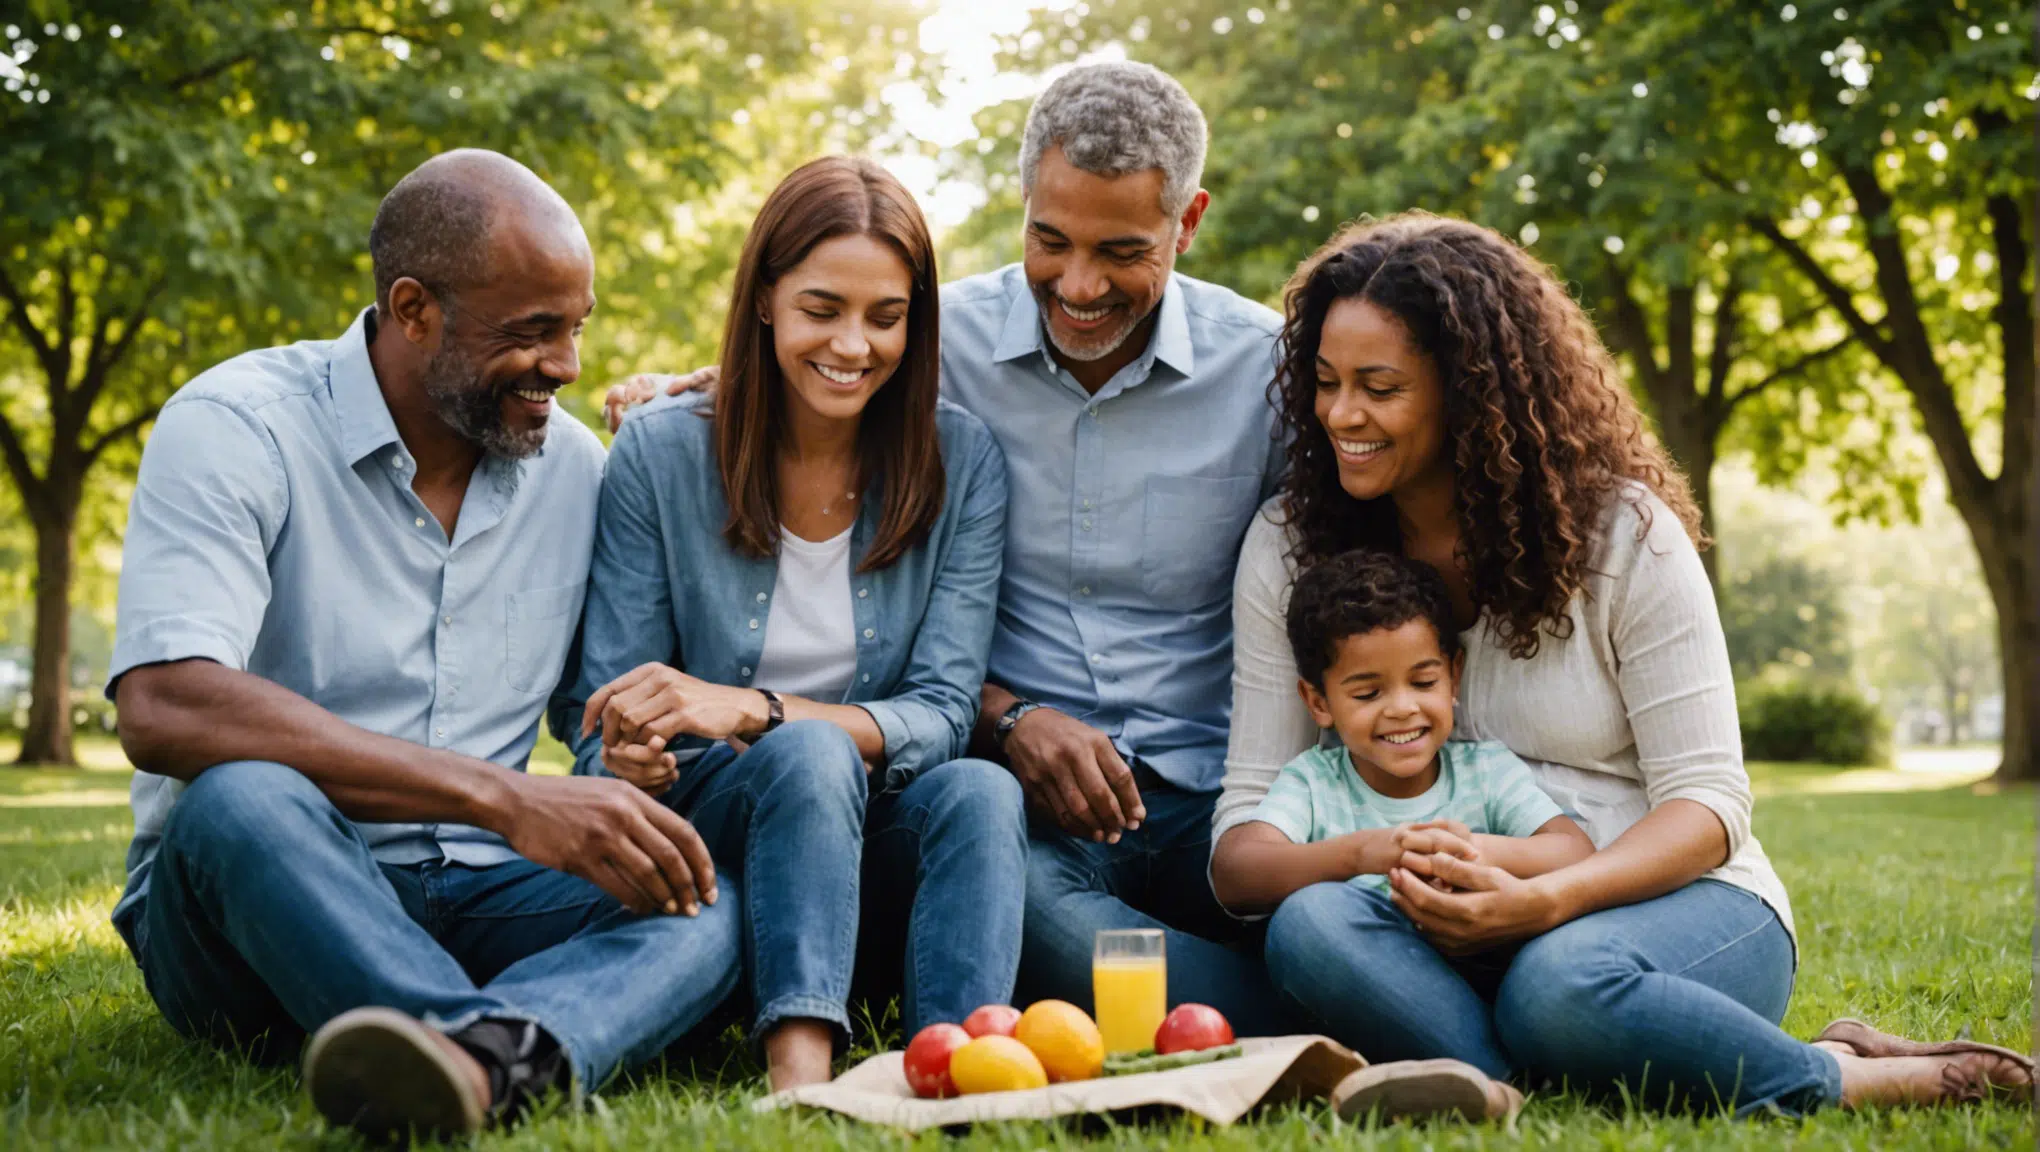 découvrez comment surmonter les obstacles liés à la connectivité familiale et renforcer les liens au sein de votre famille.